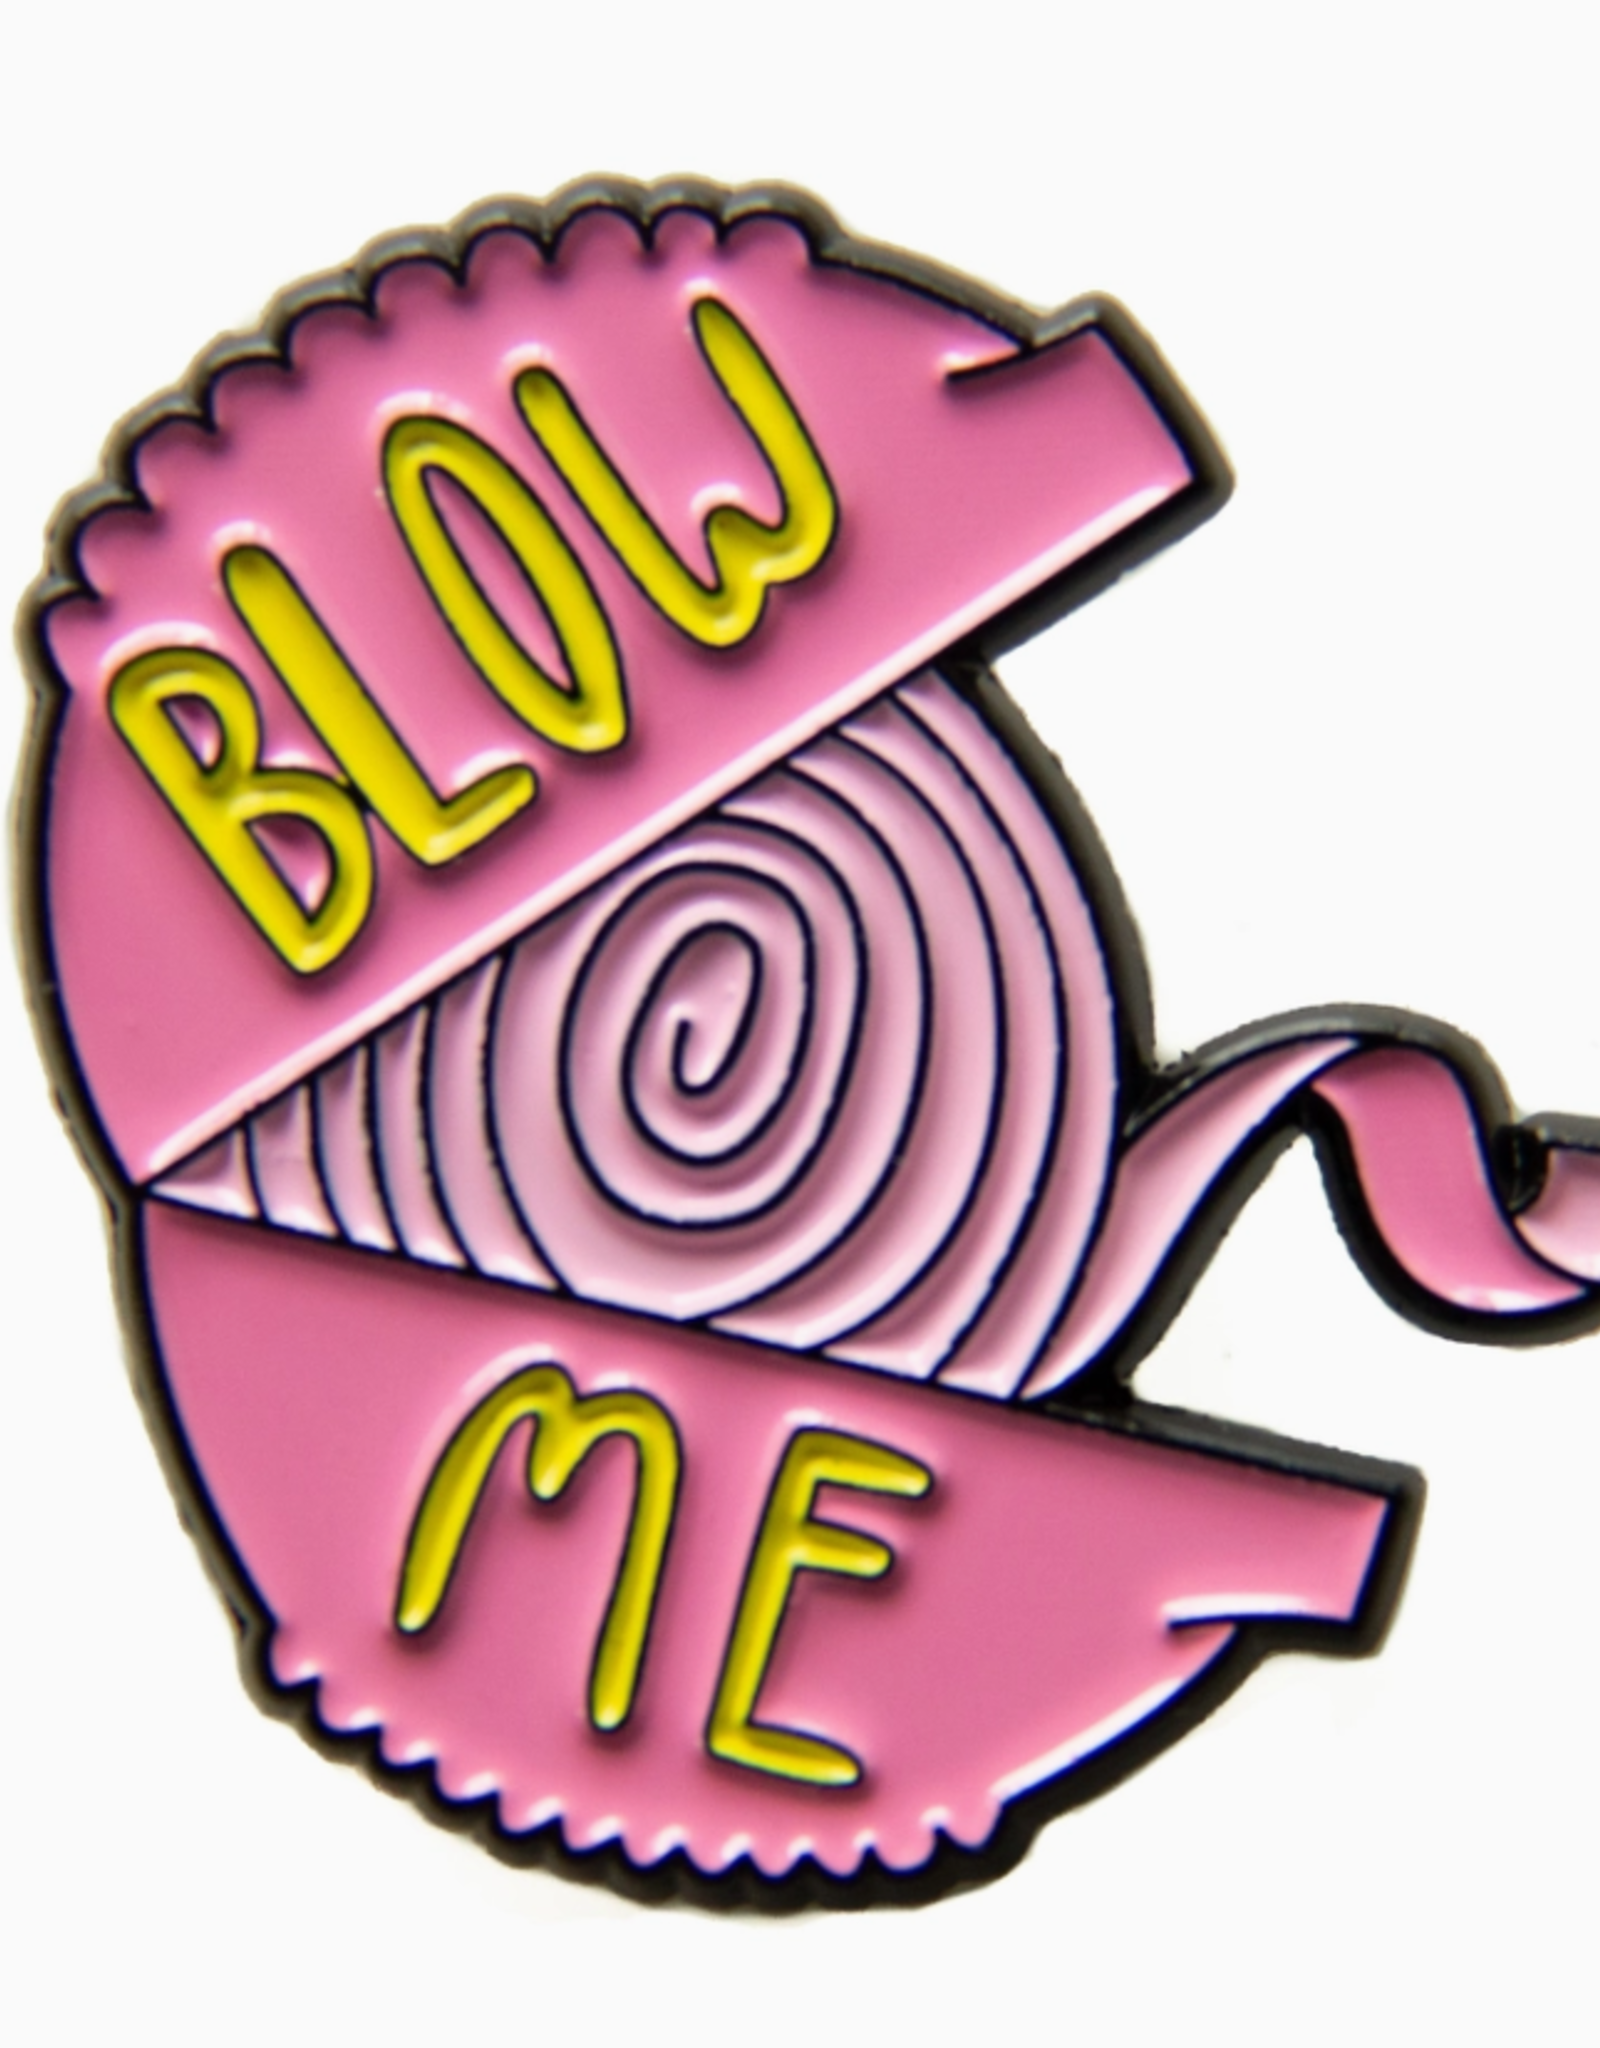 -"Blow Me" Bubble Gum Enamel Pin For Grunge Fashion